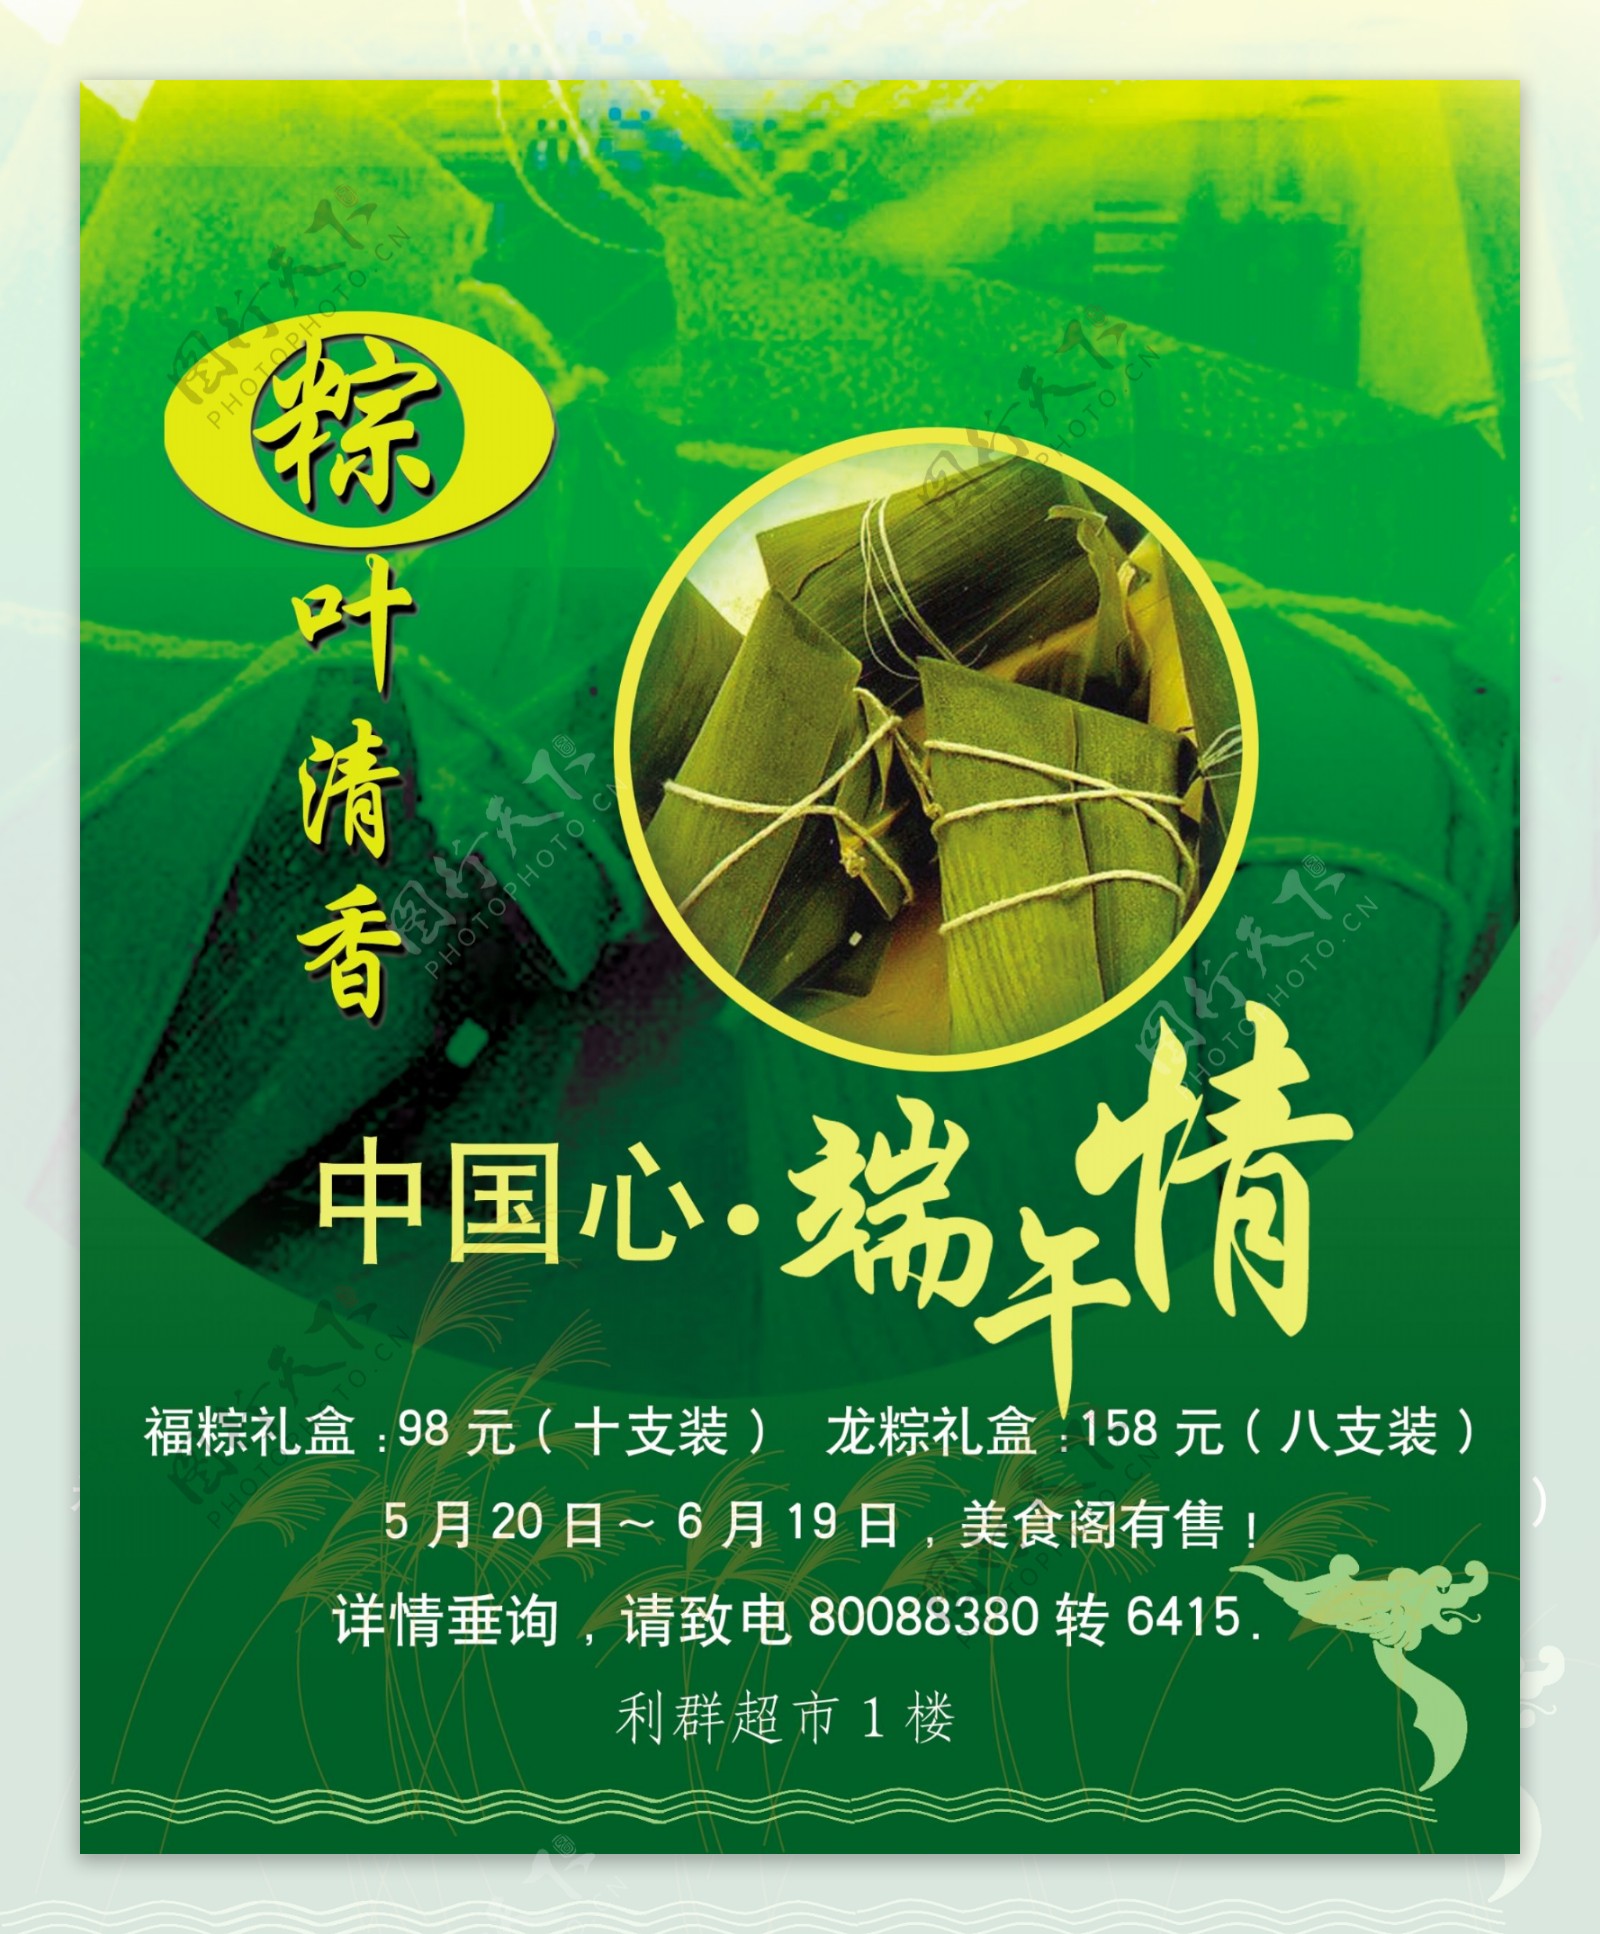 端午节粽子宣传海报模板图片